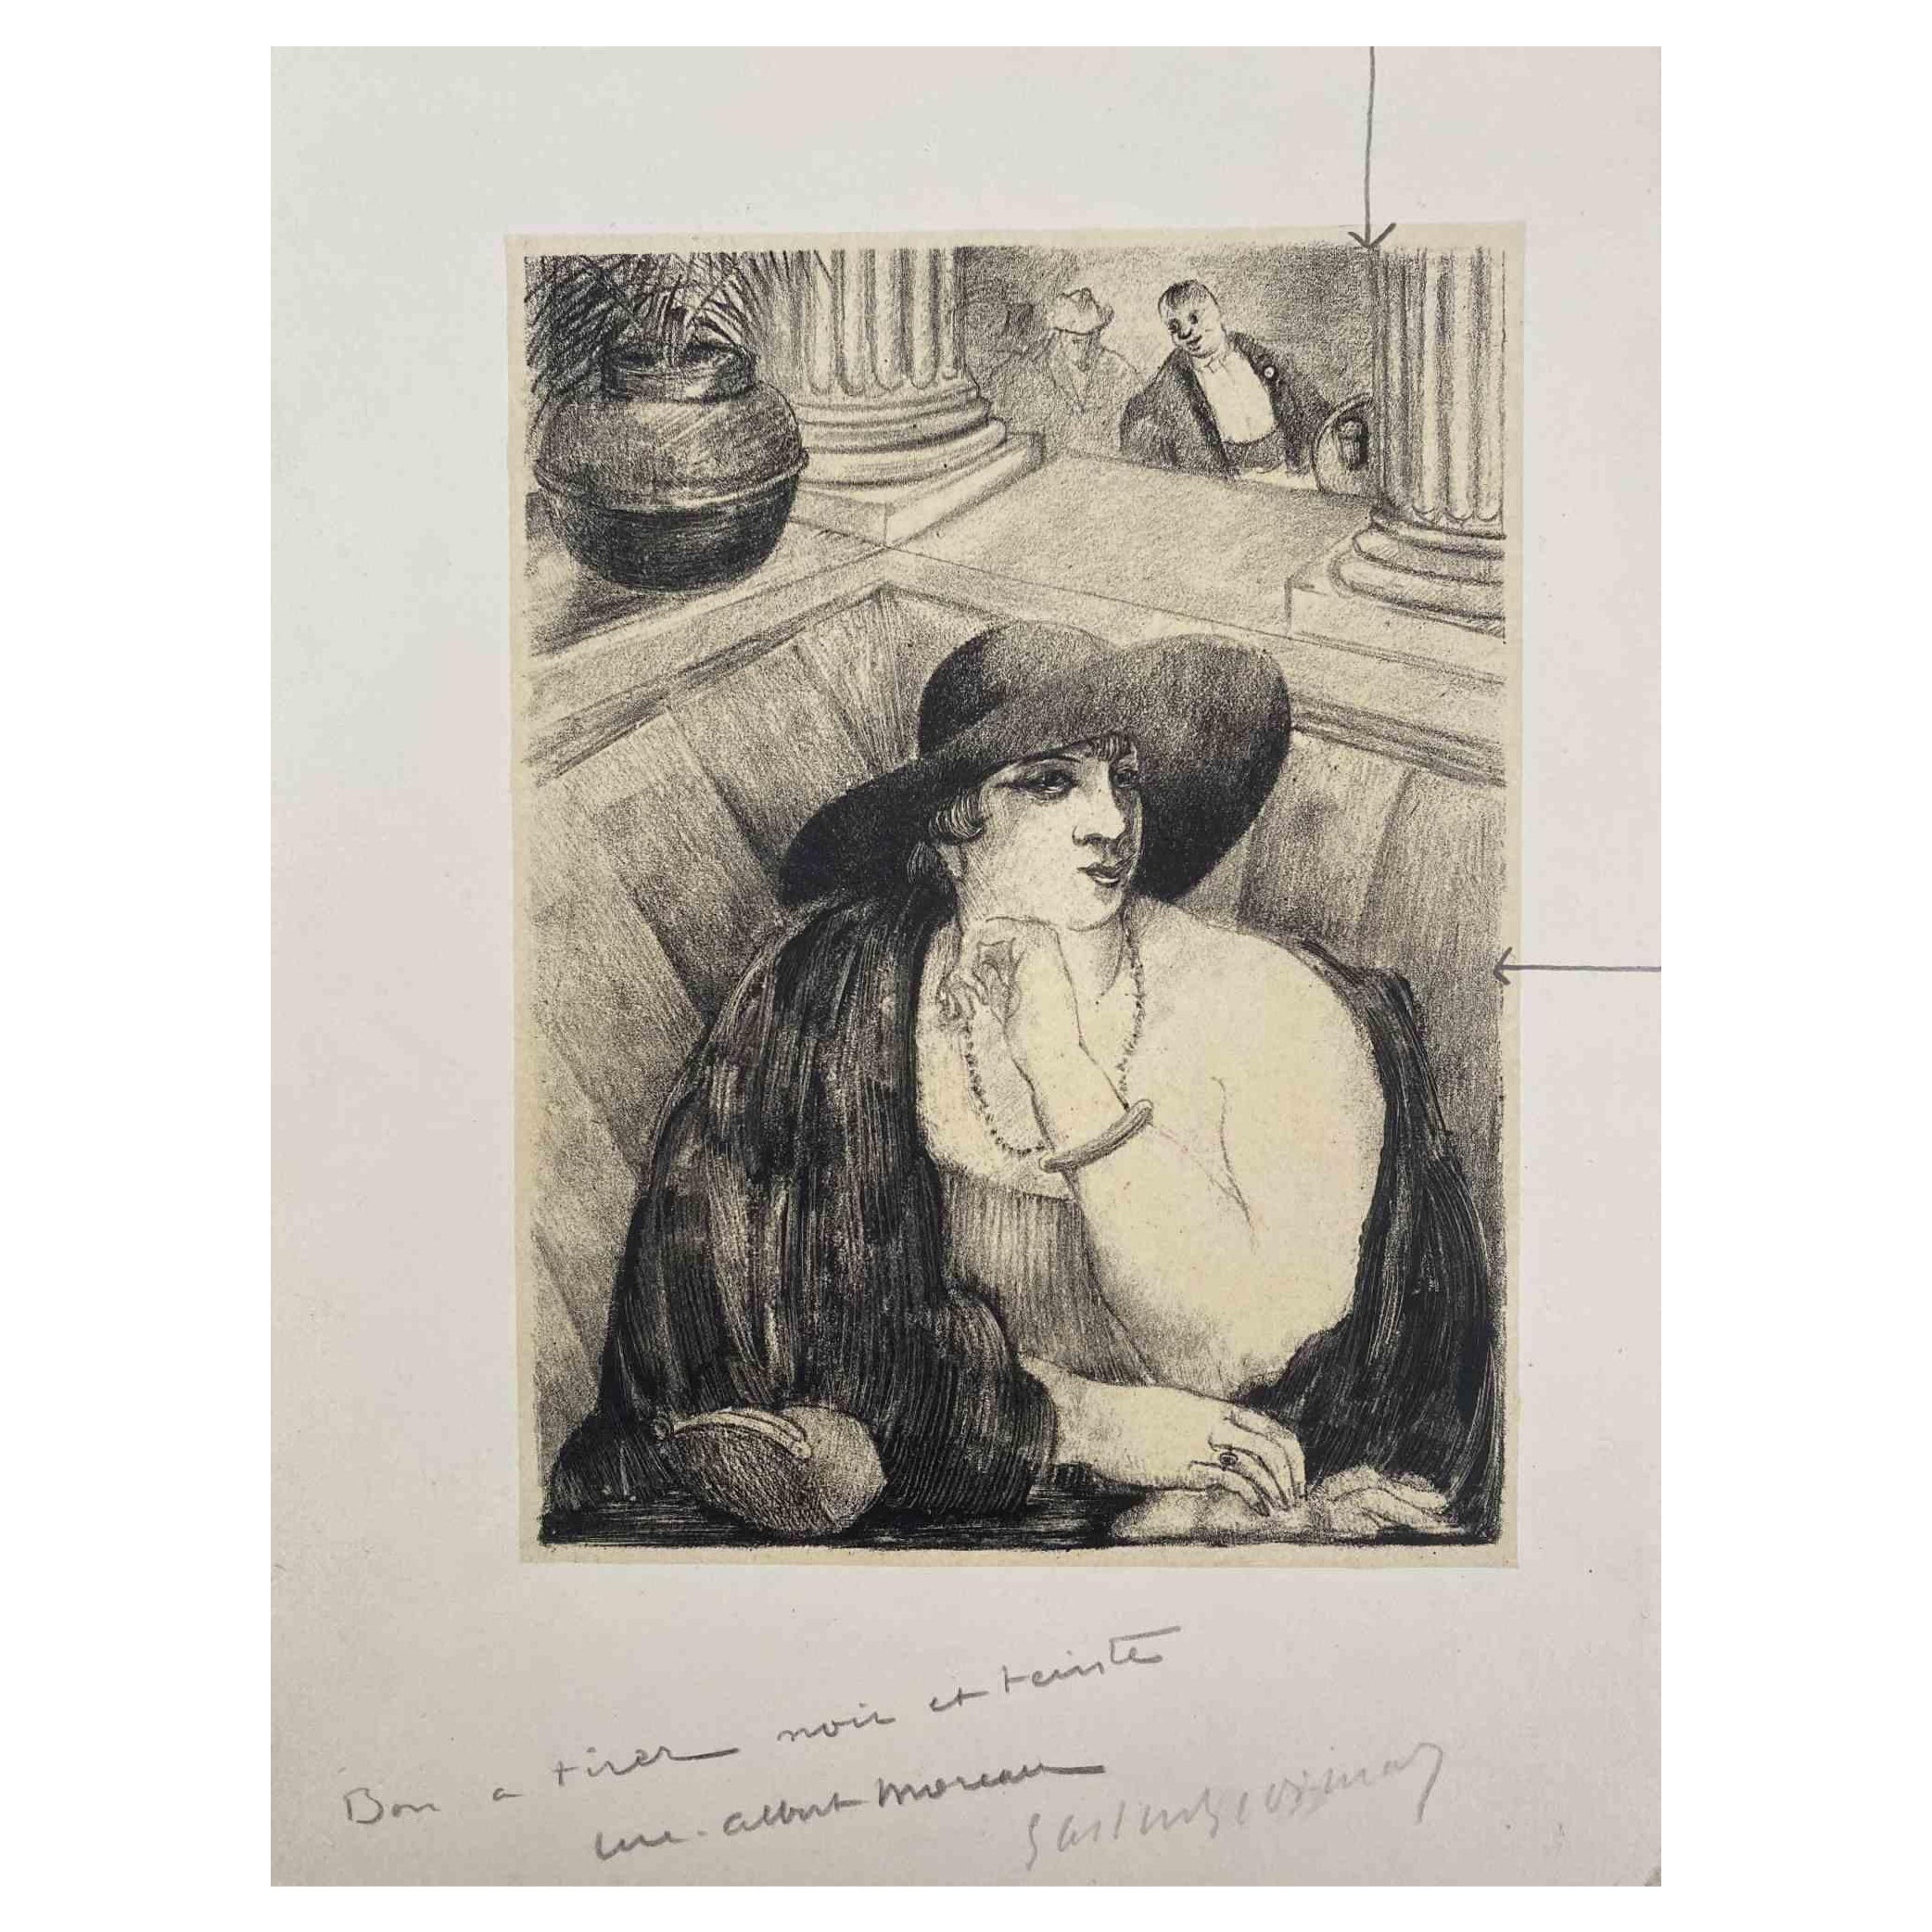 Lady in Saloon ist eine Original Lithographie auf elfenbeinfarbenem Papier von Luc Albert Moreau.

Das Kunstwerk ist in gutem Zustand mit leichten Stockflecken.

Handsigniert auf der Unterseite. 

Luc-Albert Moreau (1882-1948) ist ein französischer